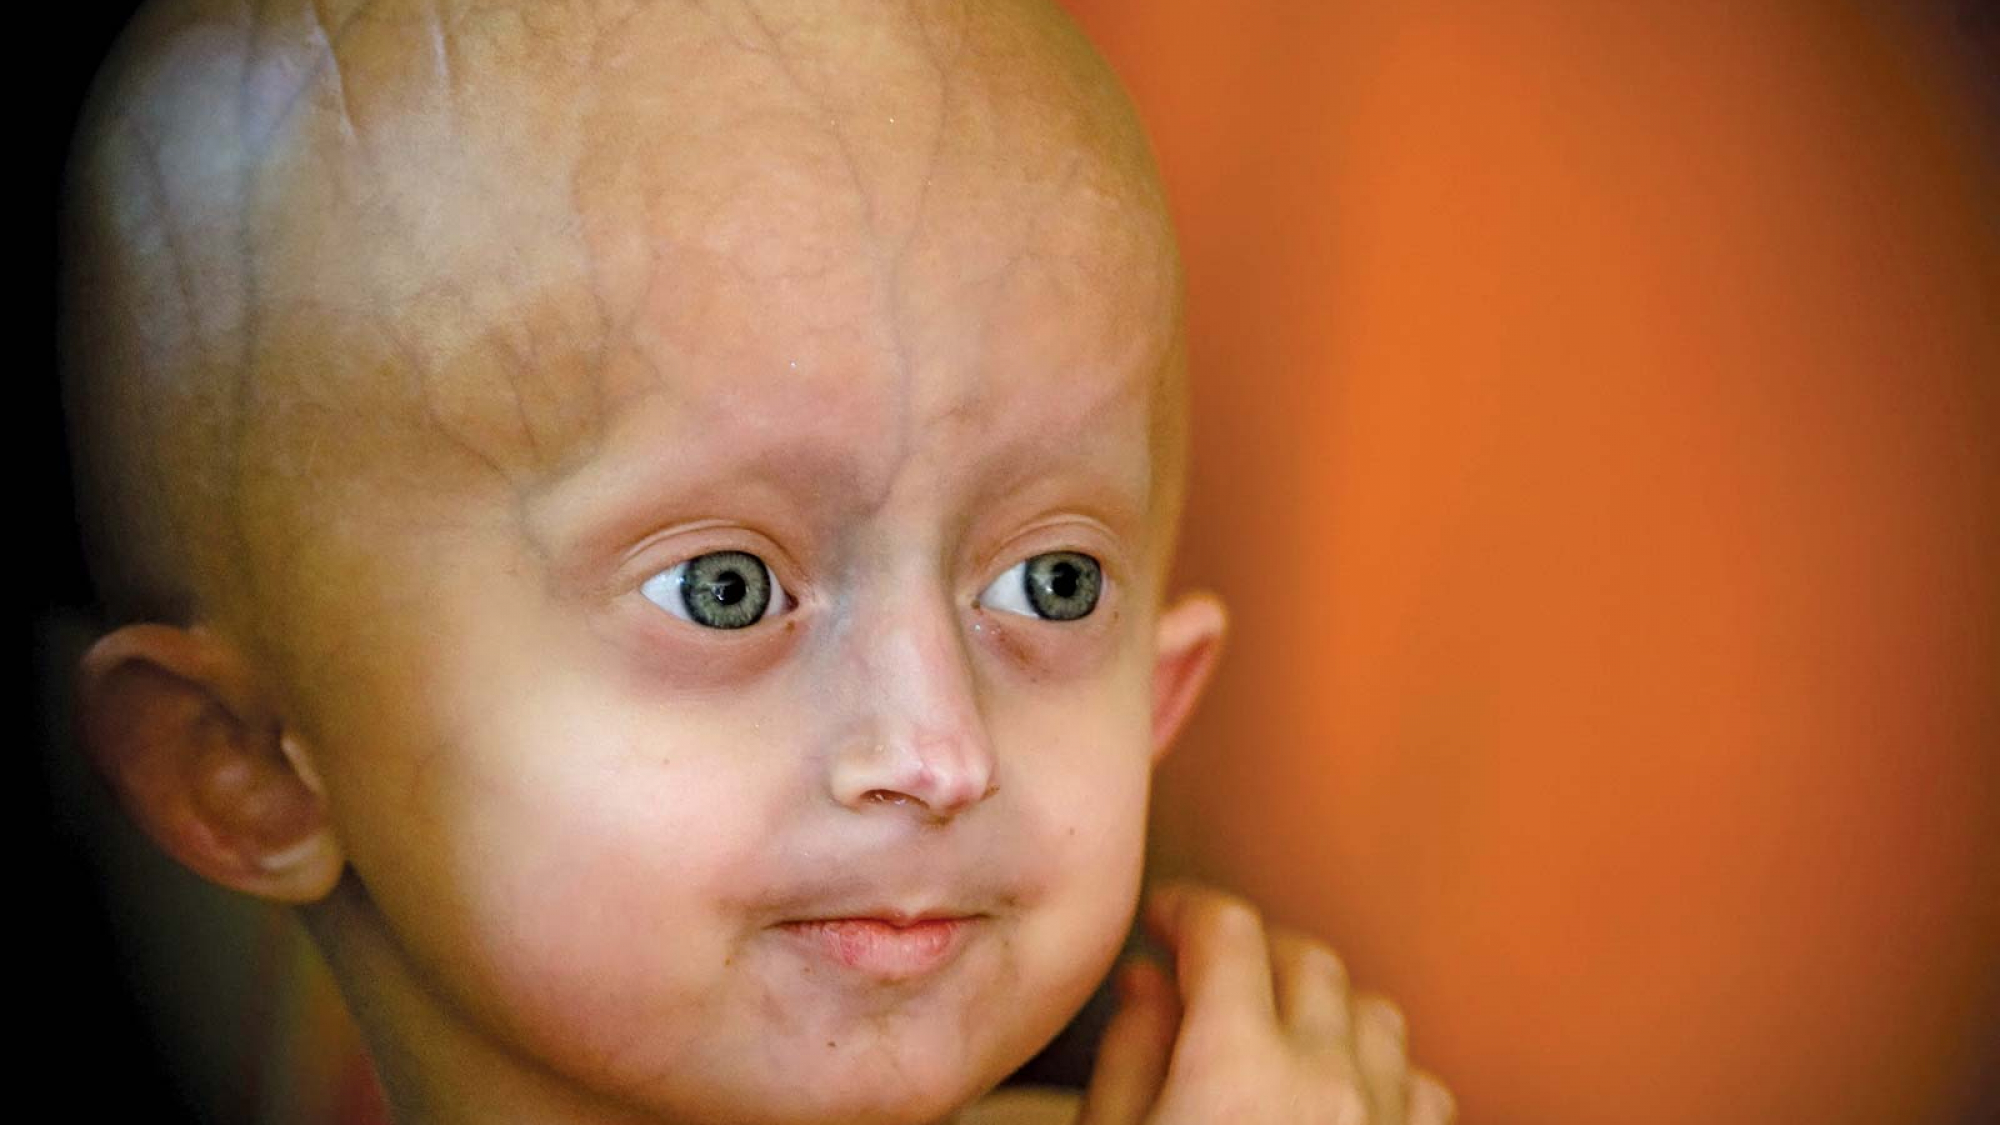 نام دیگر progeria چیست و چه نشانه هایی دارد